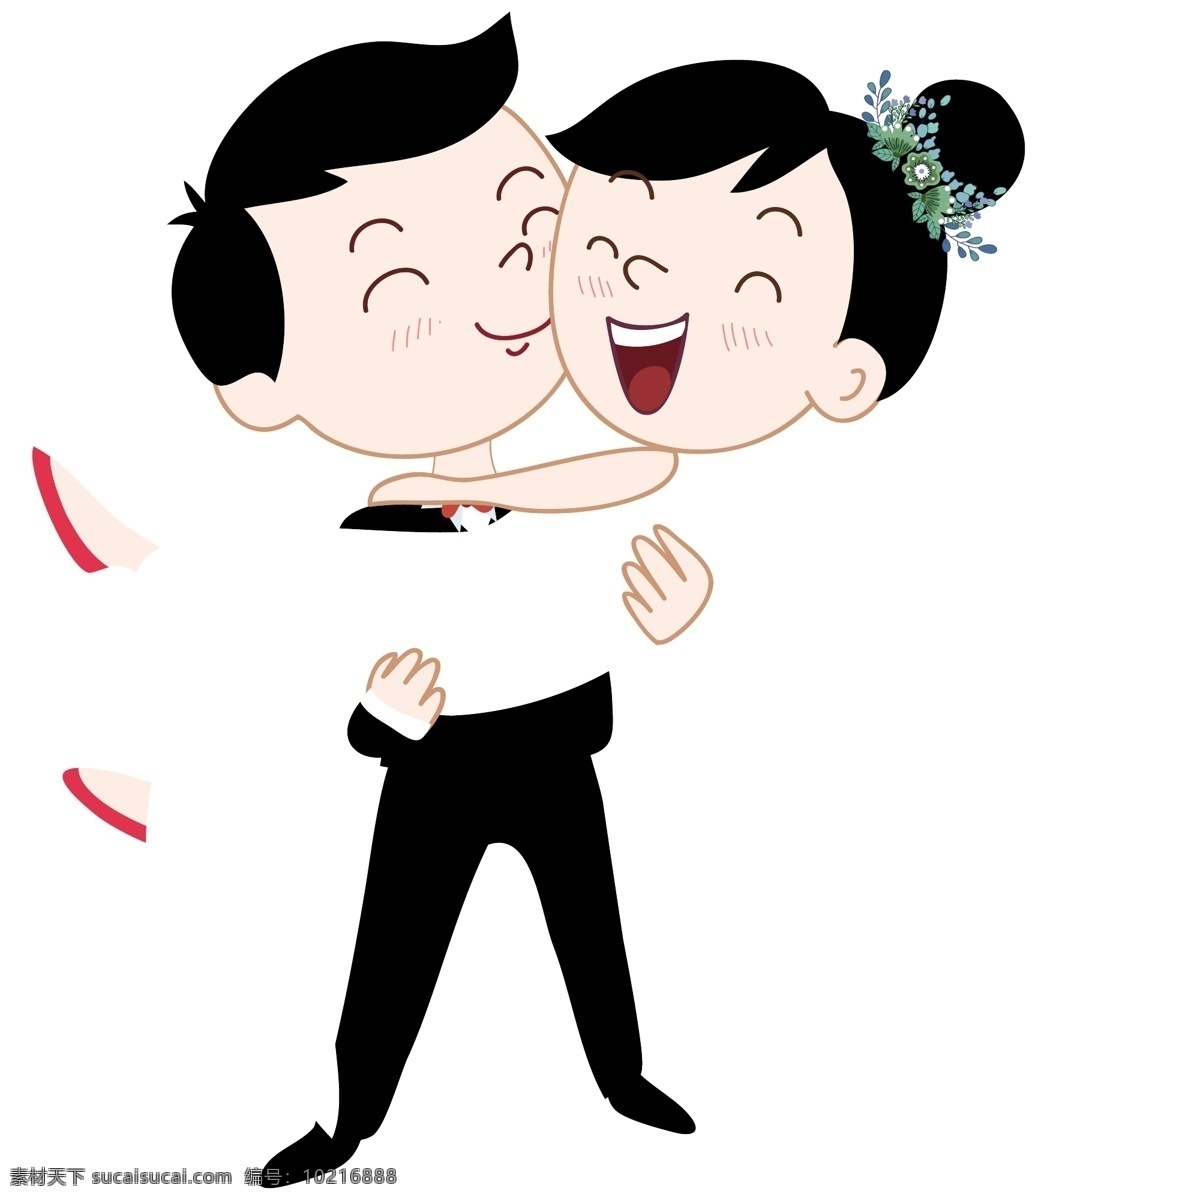 抱 拍 结婚照 恋人 矢量 免 抠 元素 卡通的 手绘的 q的 可爱的 婚纱 拍照 新娘 新郎 新婚 婚礼 结婚 爱情 浪漫